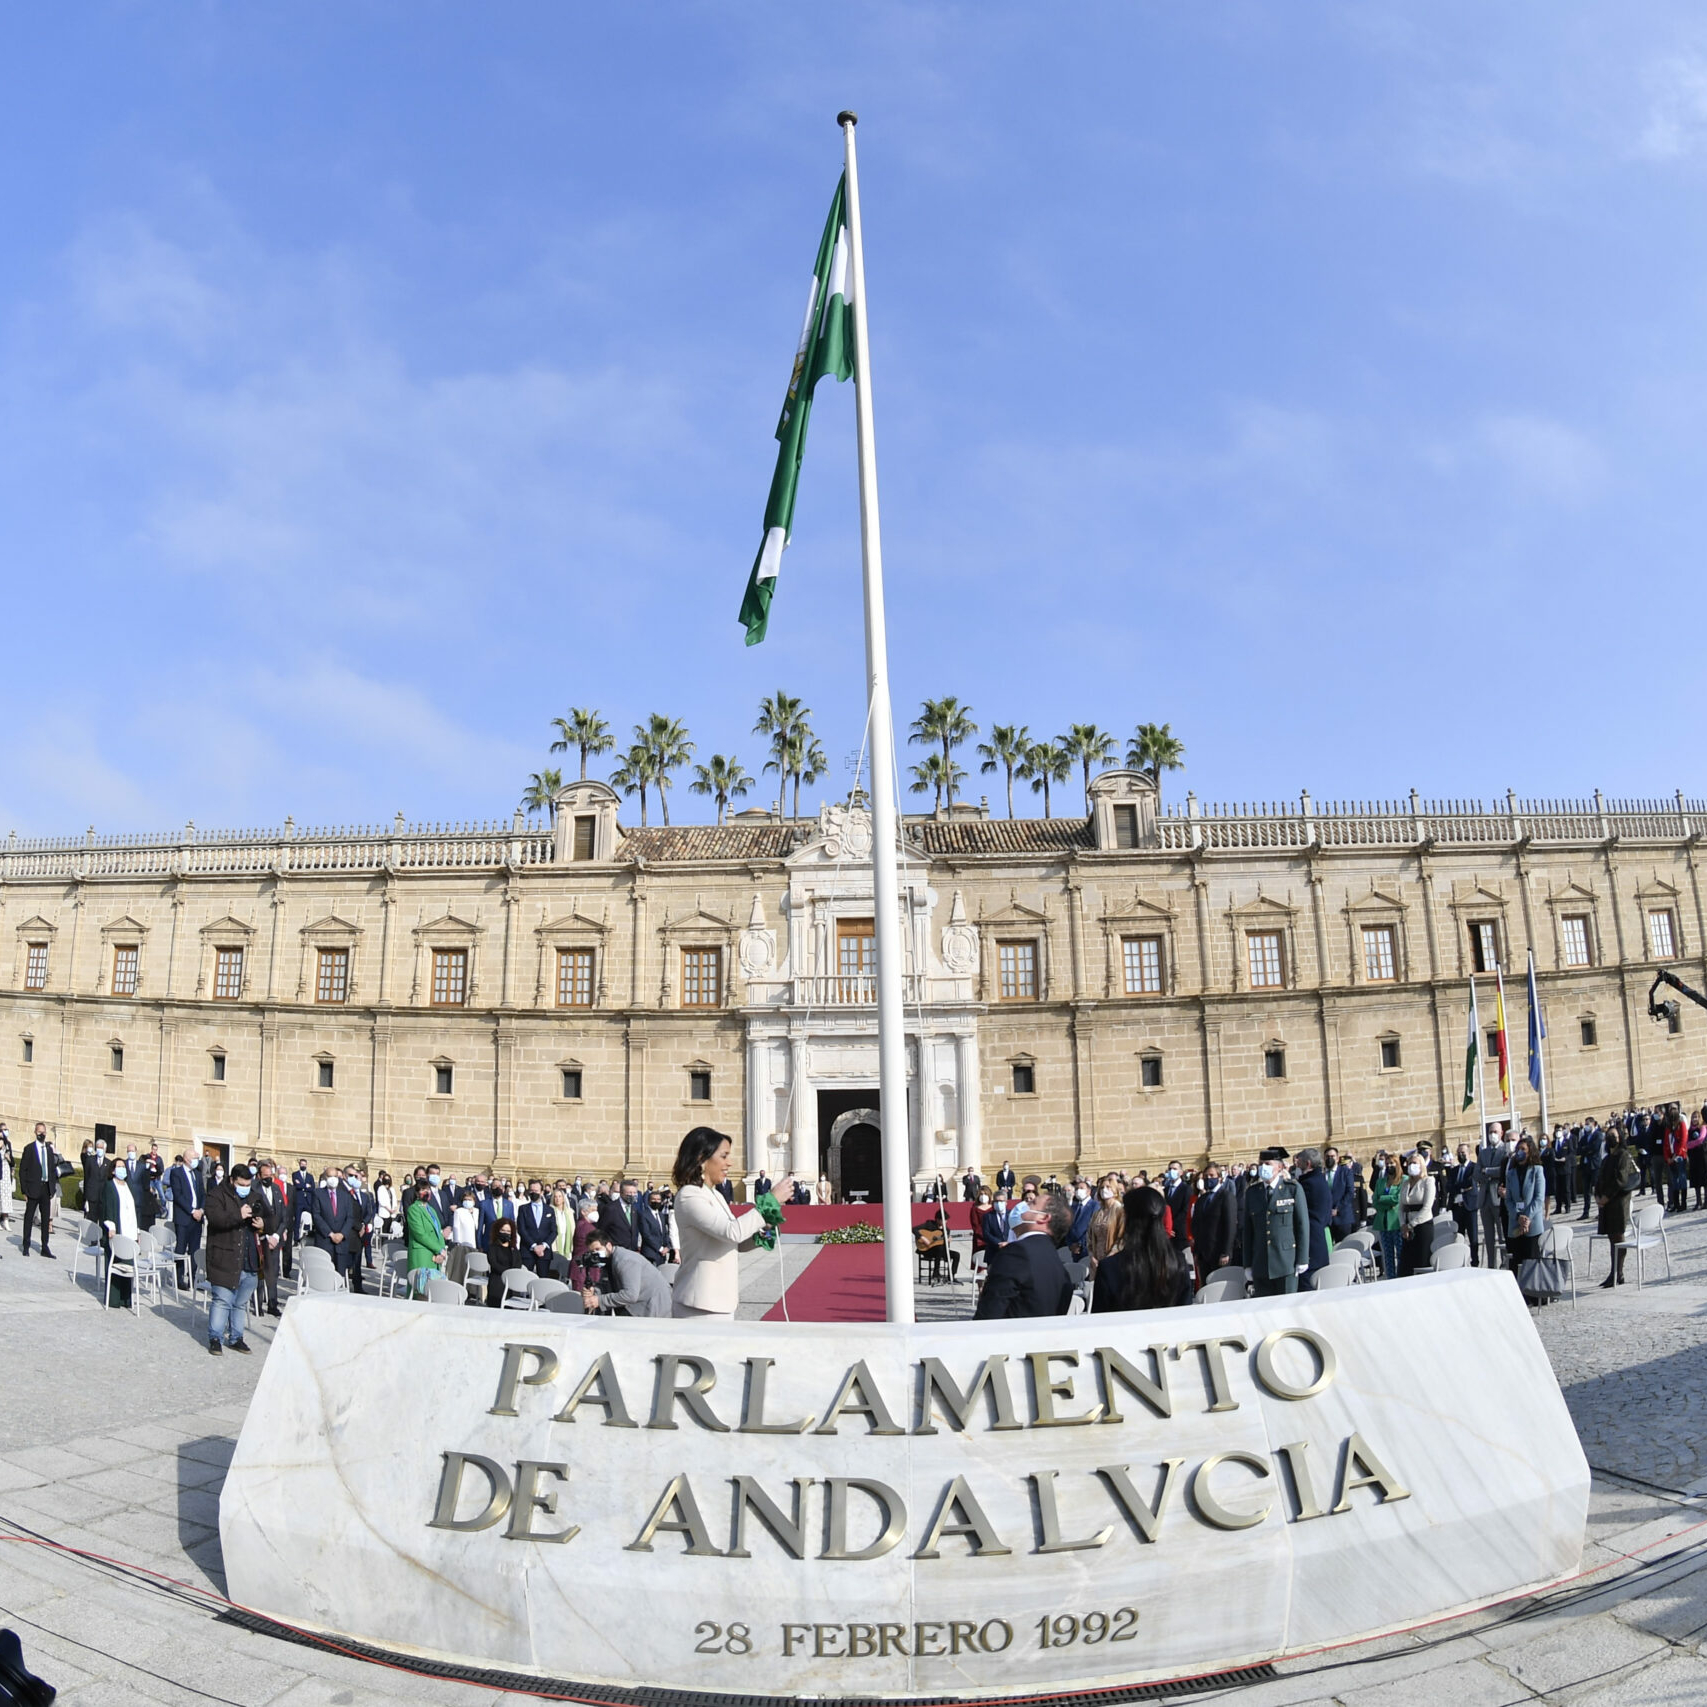 La presidenta de la Cámara, Marta Bosquet iza la bandera de Andalucía